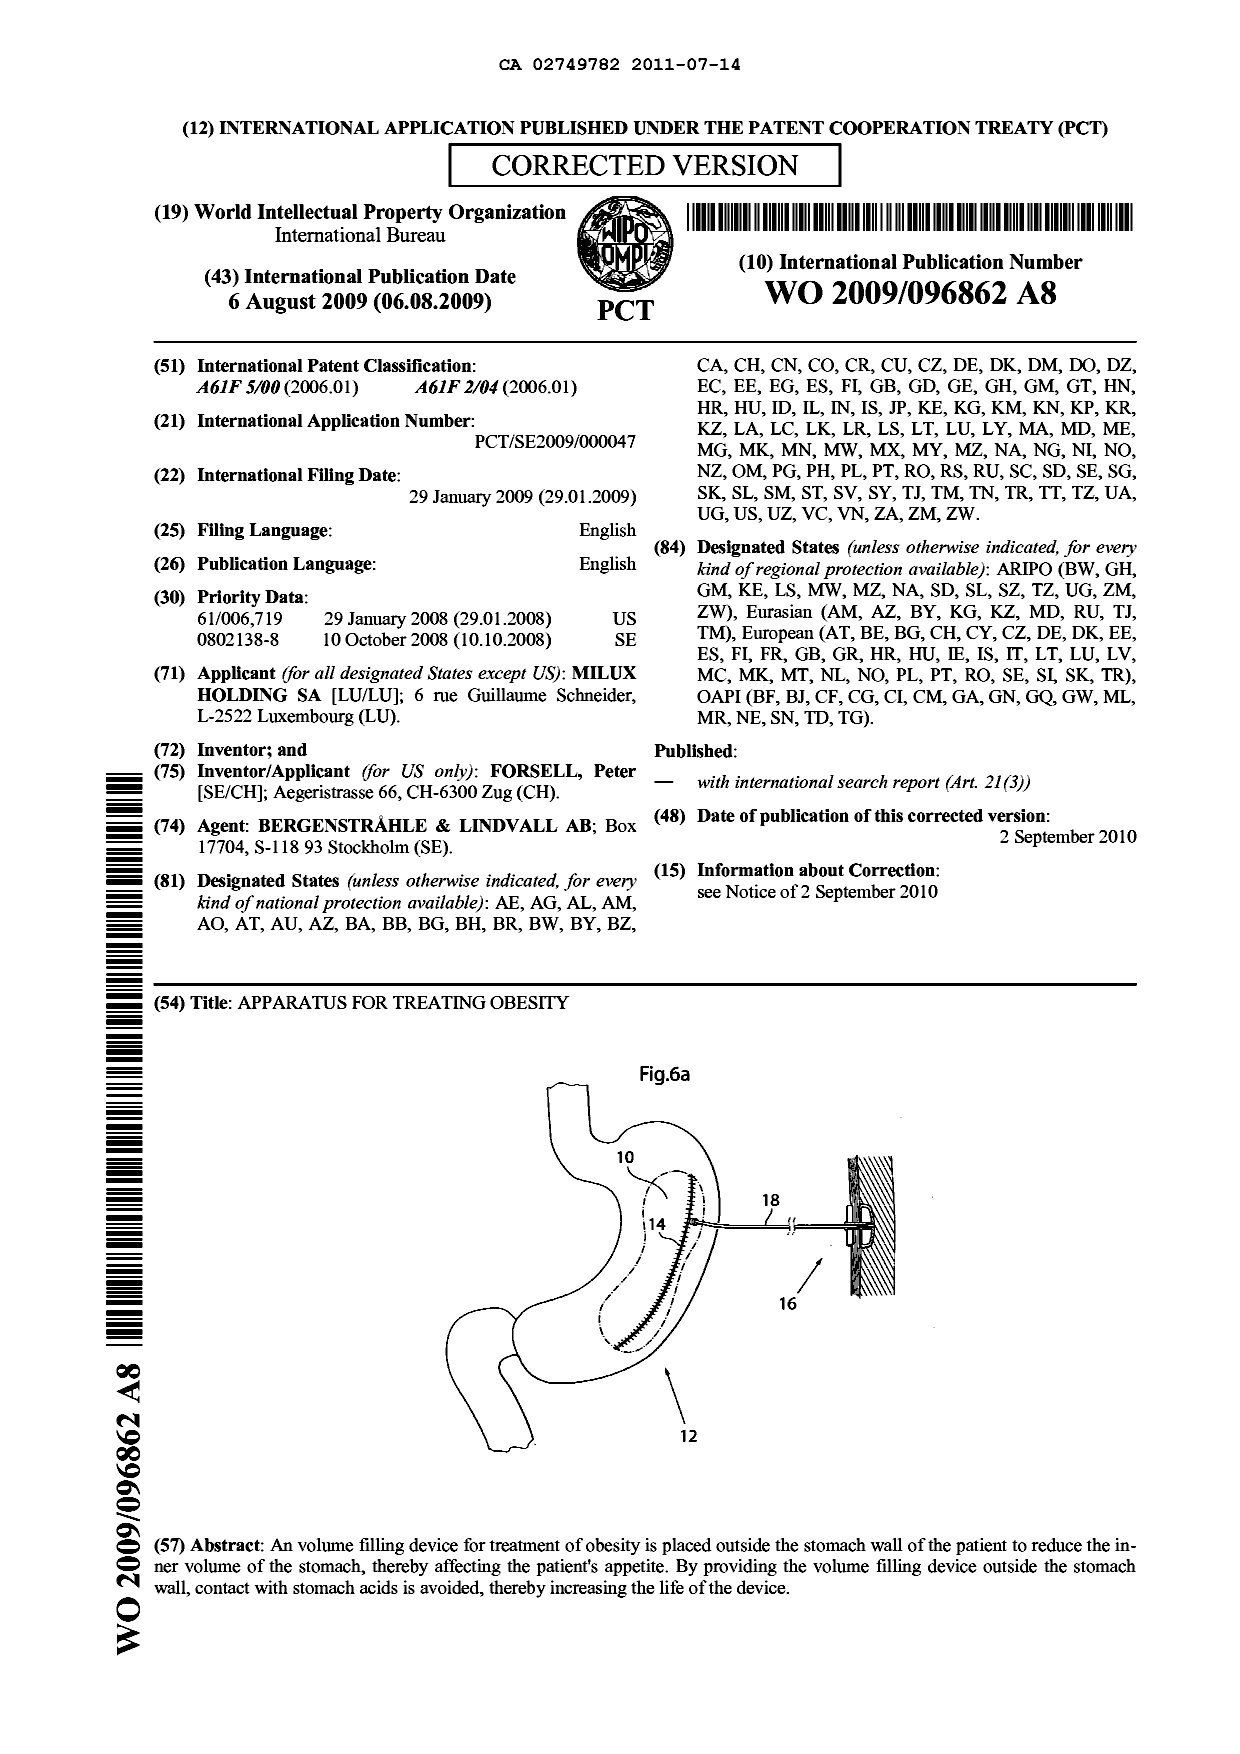 Document de brevet canadien 2749782. Abrégé 20110714. Image 1 de 1